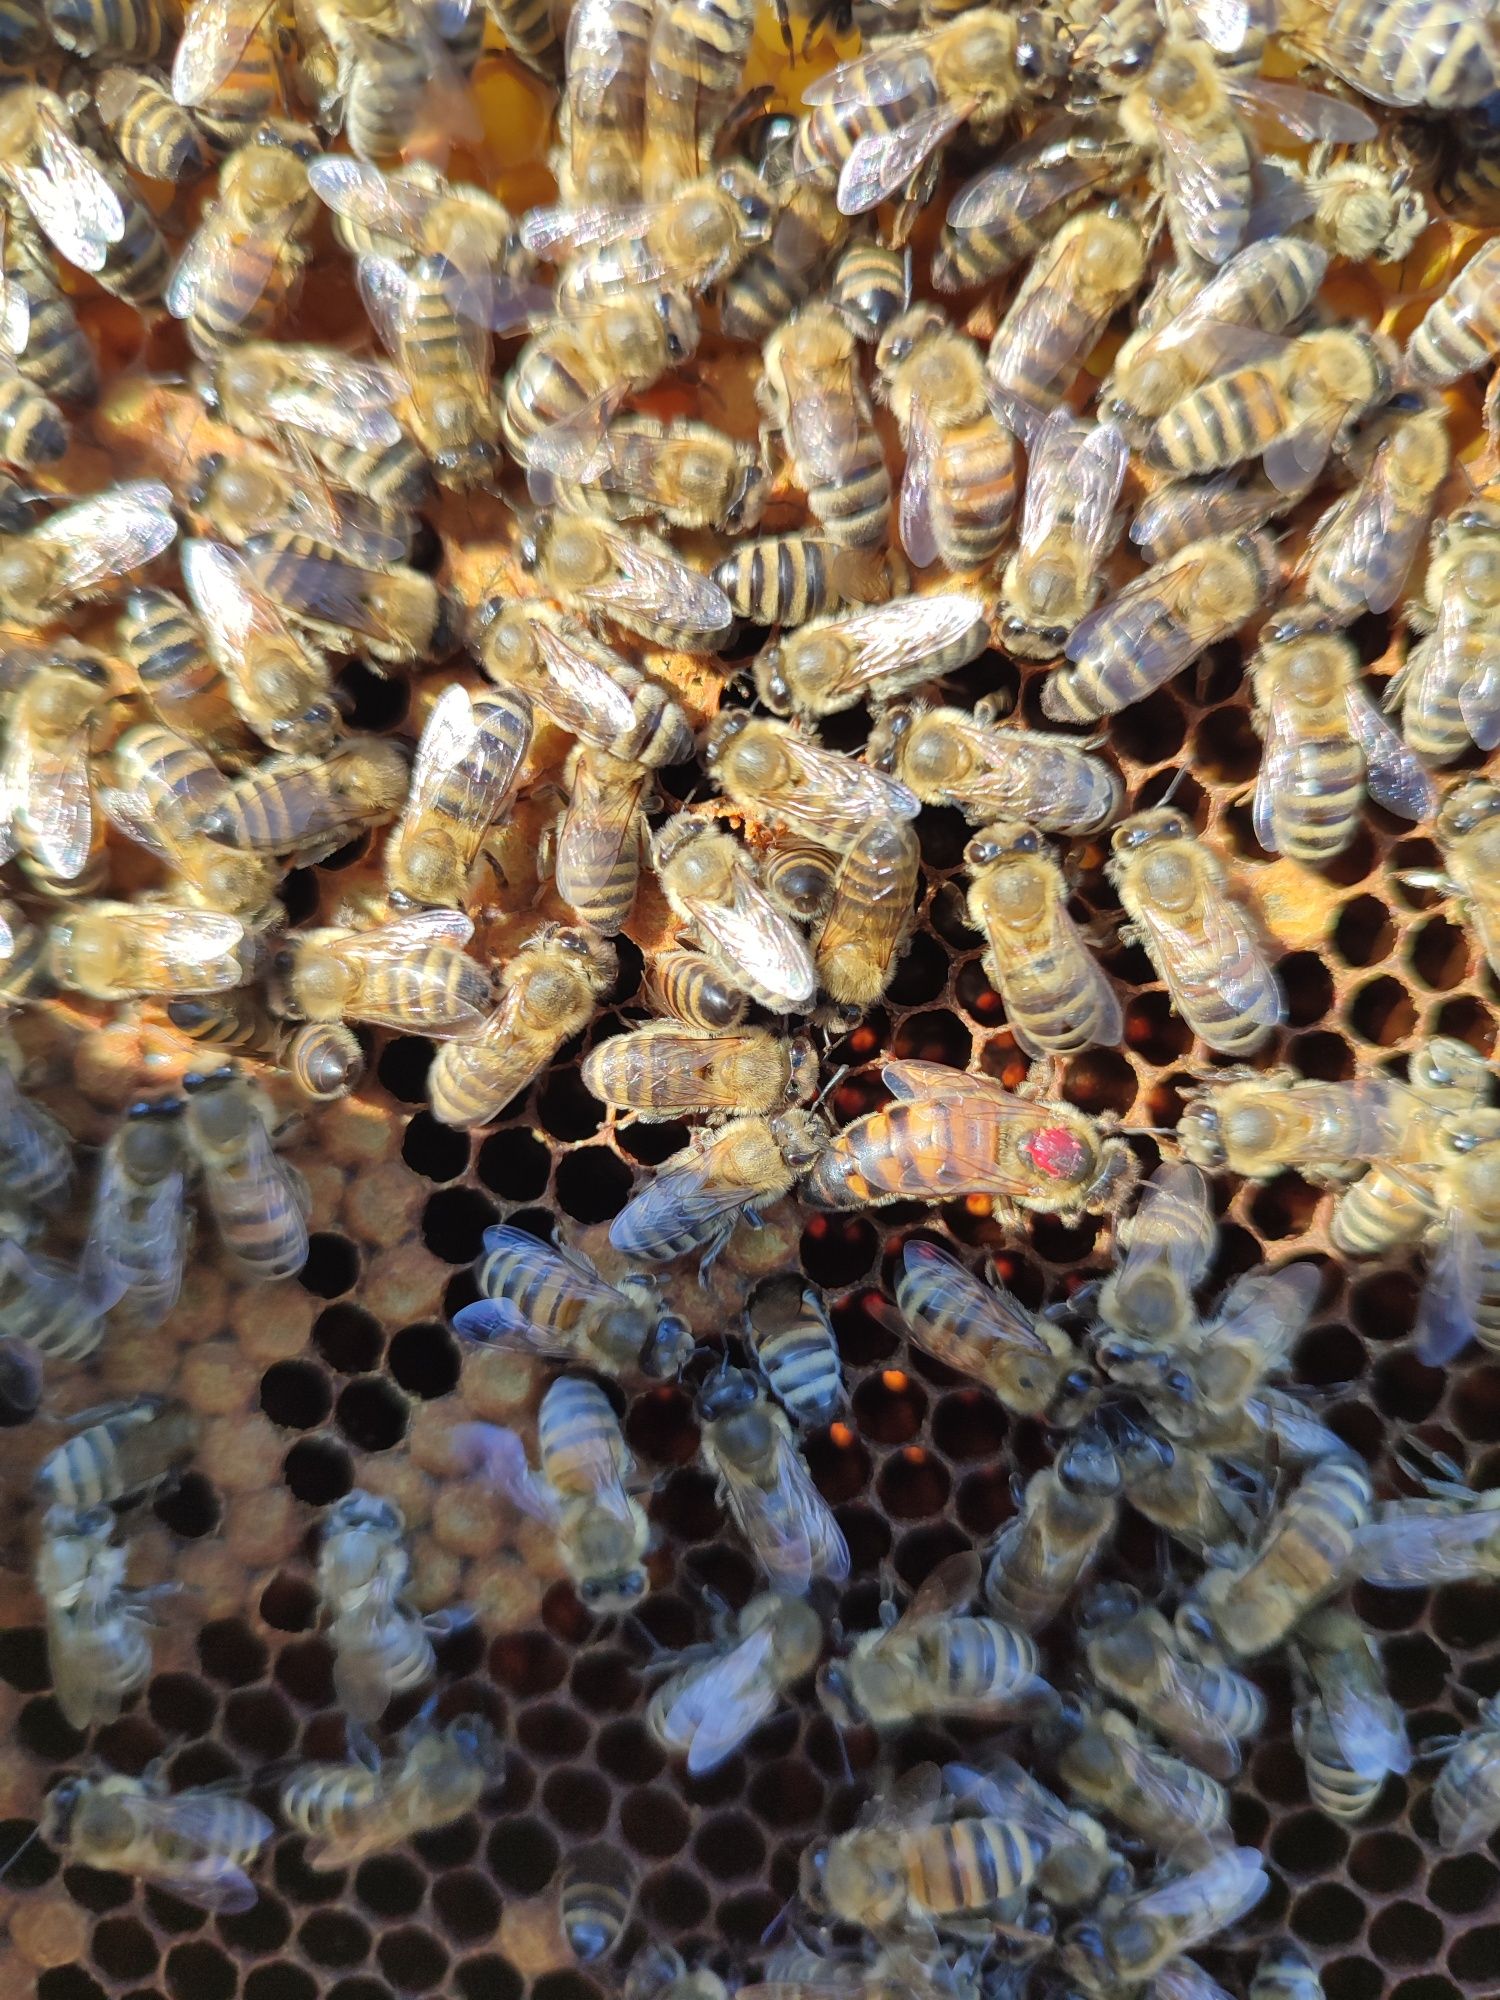 Matki pszczele , nieunasiennione kortówka jednodniówki